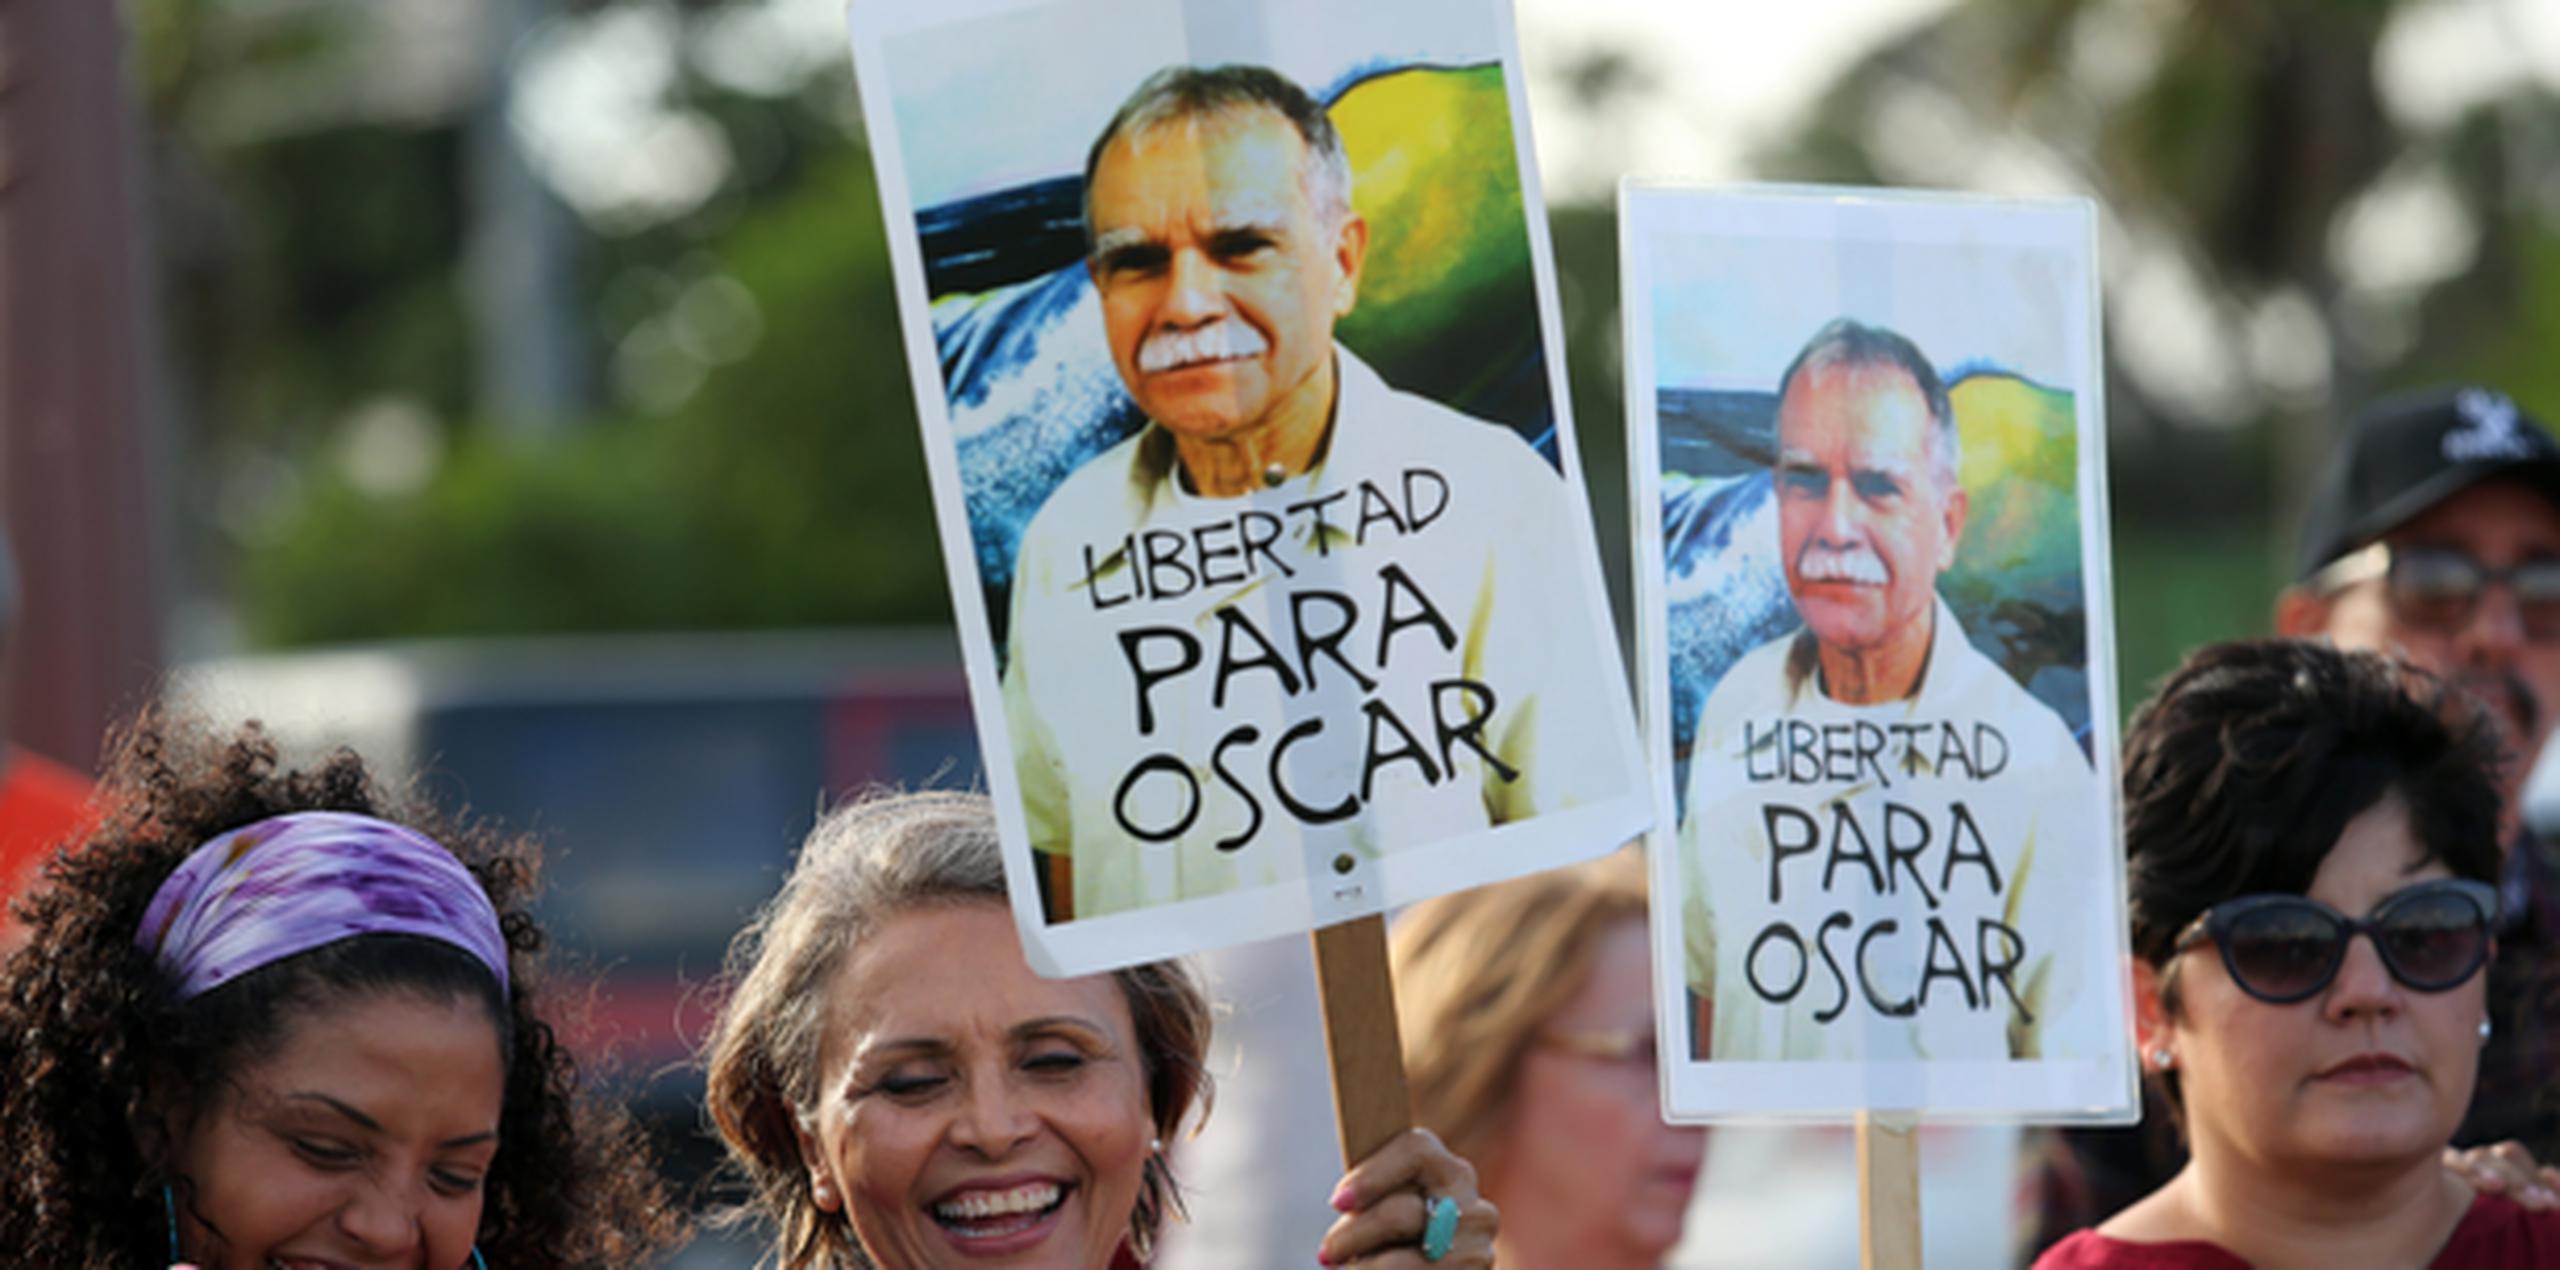 Oscar López Rivera lleva 34 años cumpliendo una sentencia por conspiración sediciosa por su lucha por la independencia de Puerto Rico. (juan.martinez@gfrmedia.com)